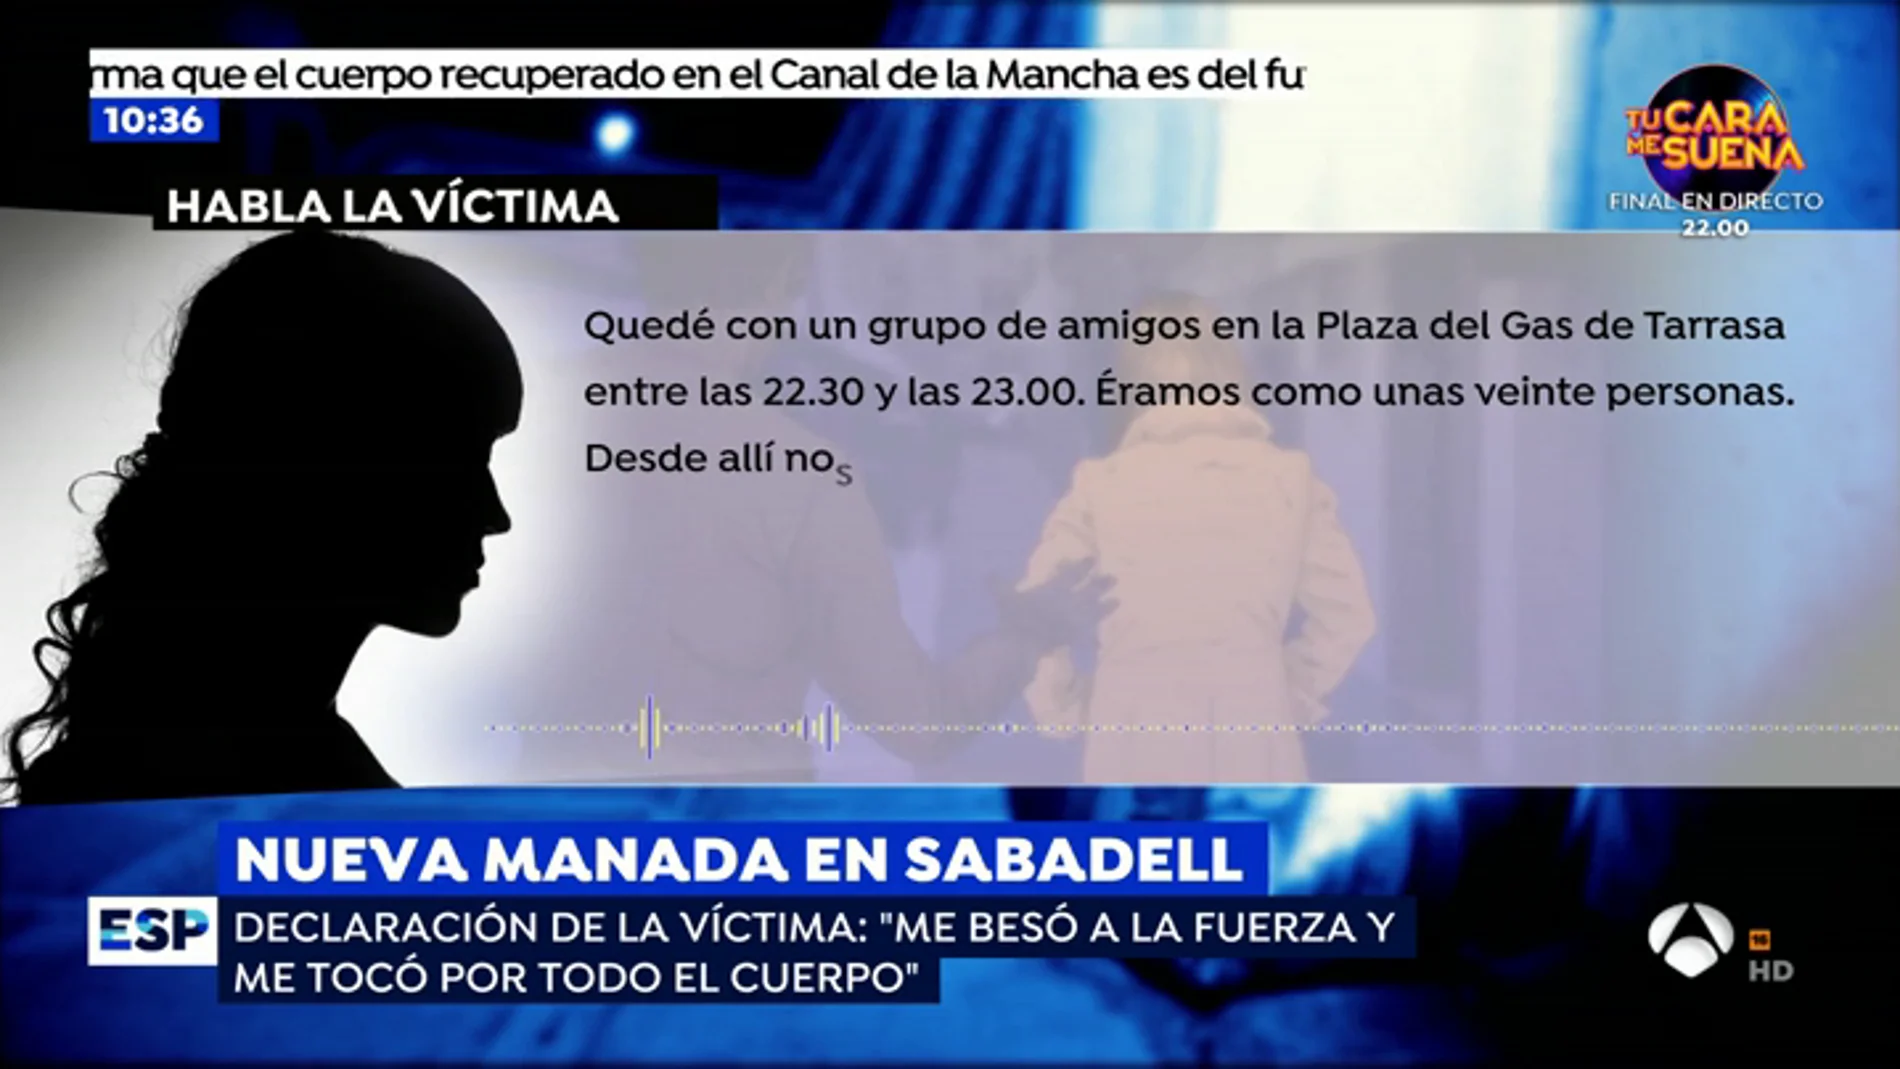 La declaración de la víctima de la 'Manada de Sabadell'.